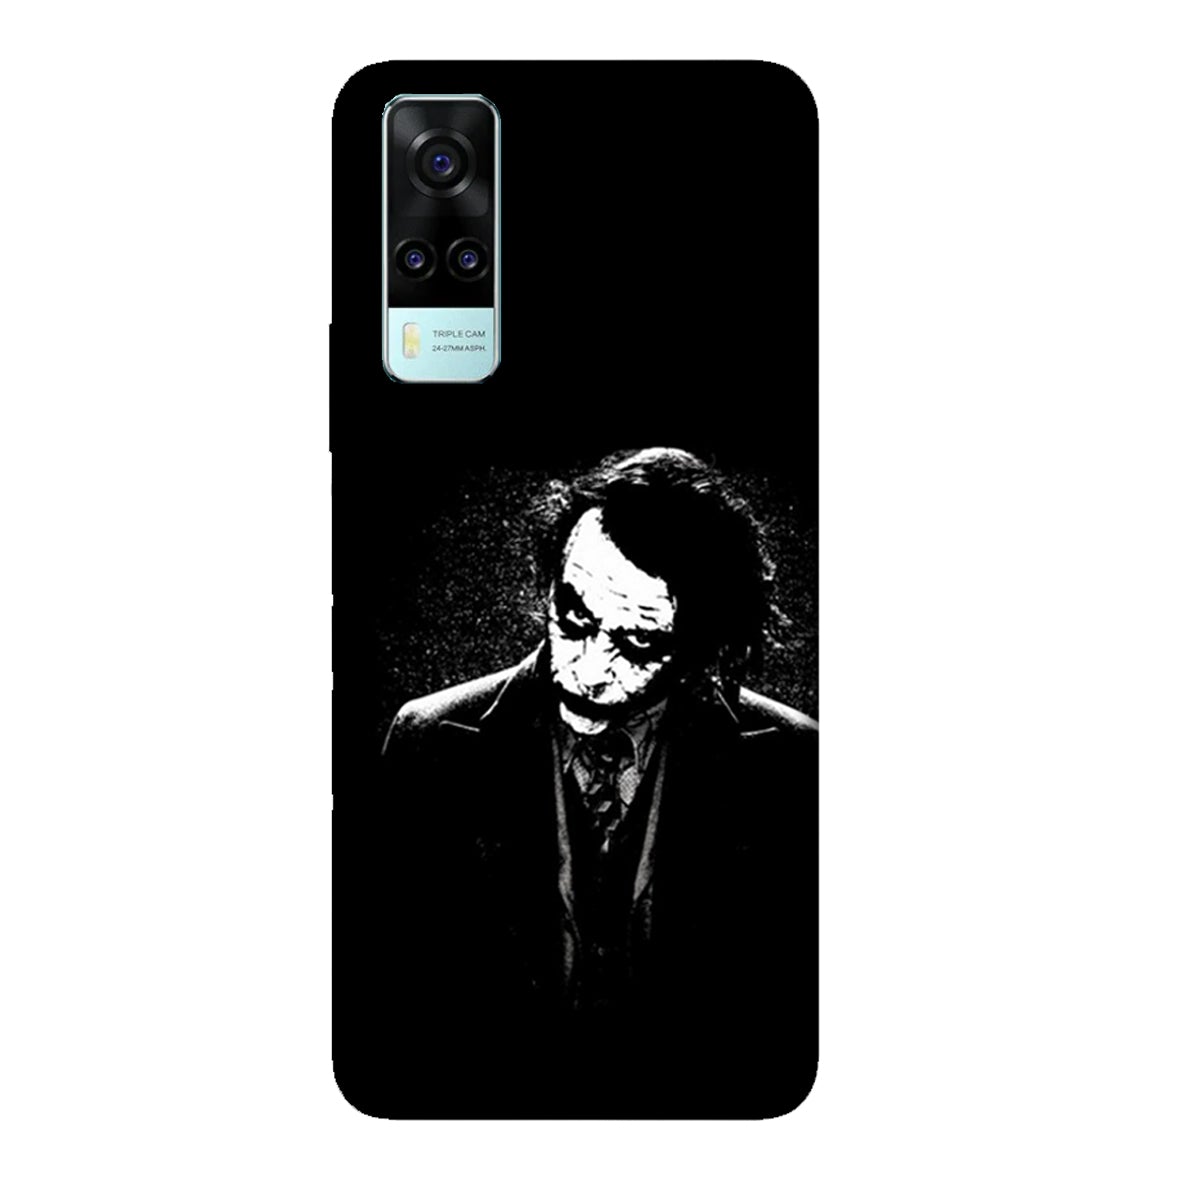 The Joker - Black & White - Mobile Phone Cover - Hard Case - Vivo